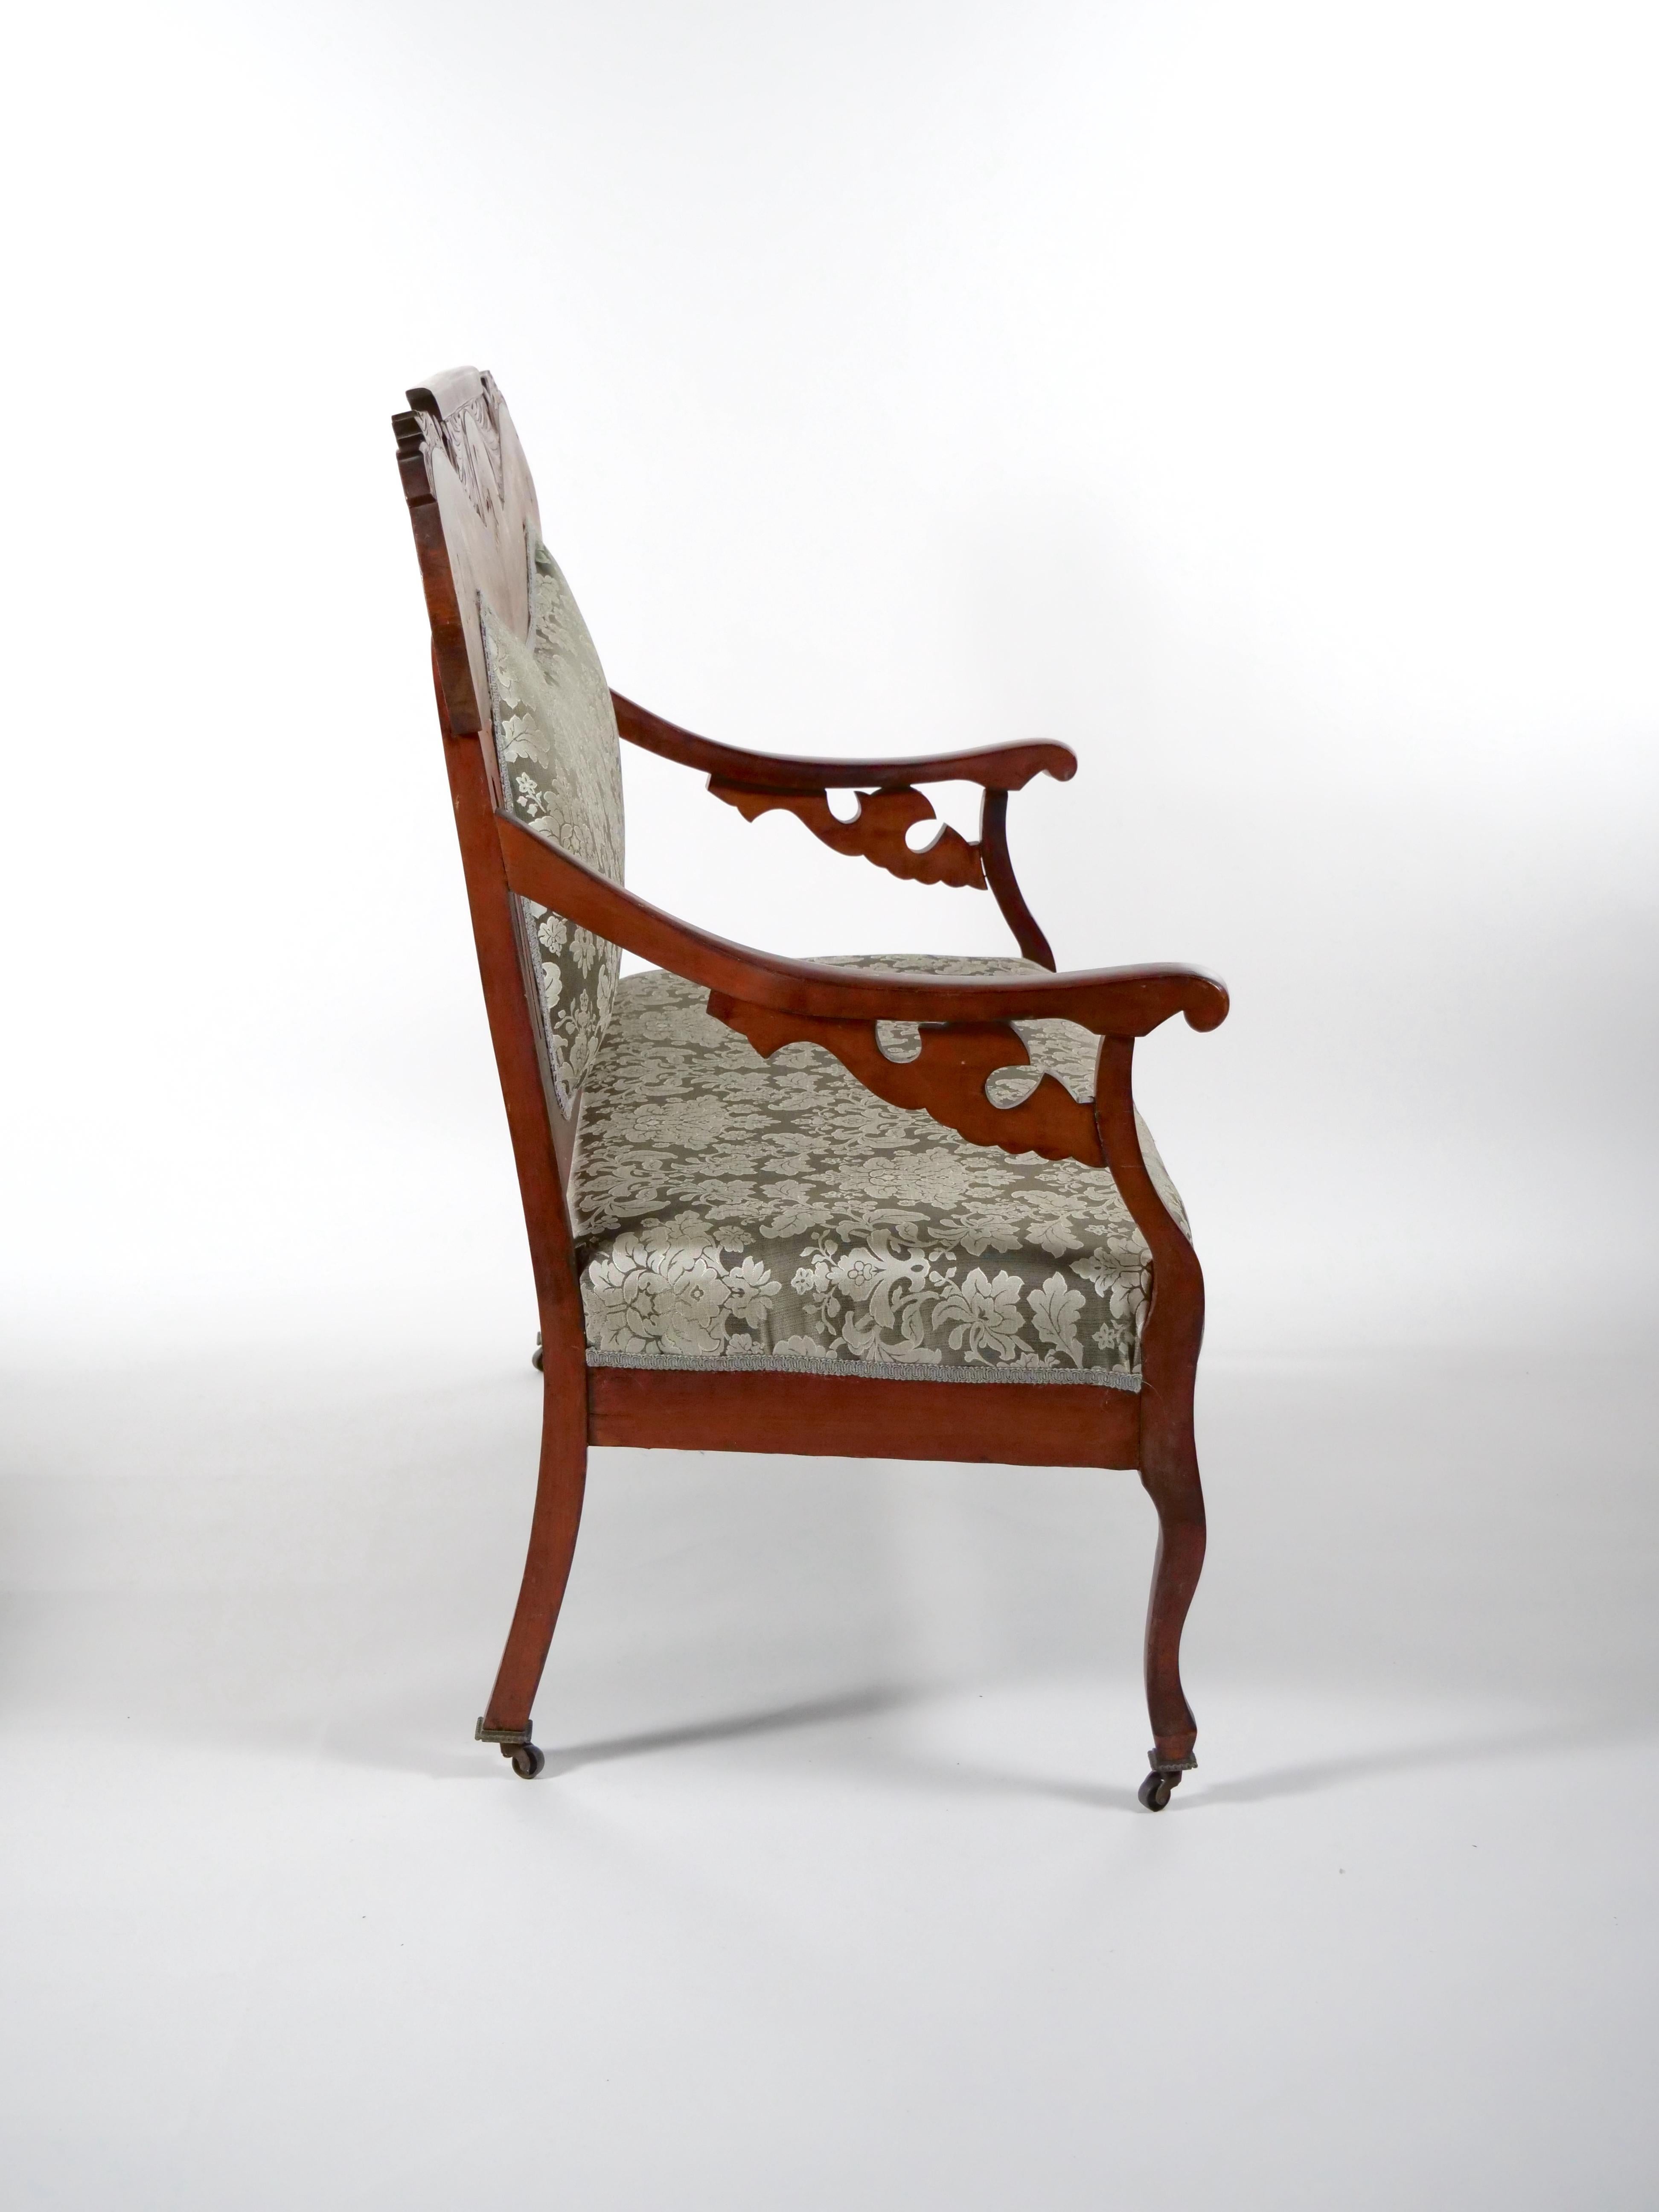 Hochwertiges und wunderschön handgeschnitztes Mahagoni-Sofa mit Intarsien. Das Sofa verfügt über einen hölzernen Rahmen eingelegt oben blättrigen Dekoration, ruht auf vier quadratischen handgeschnitzten konischen Füßen mit